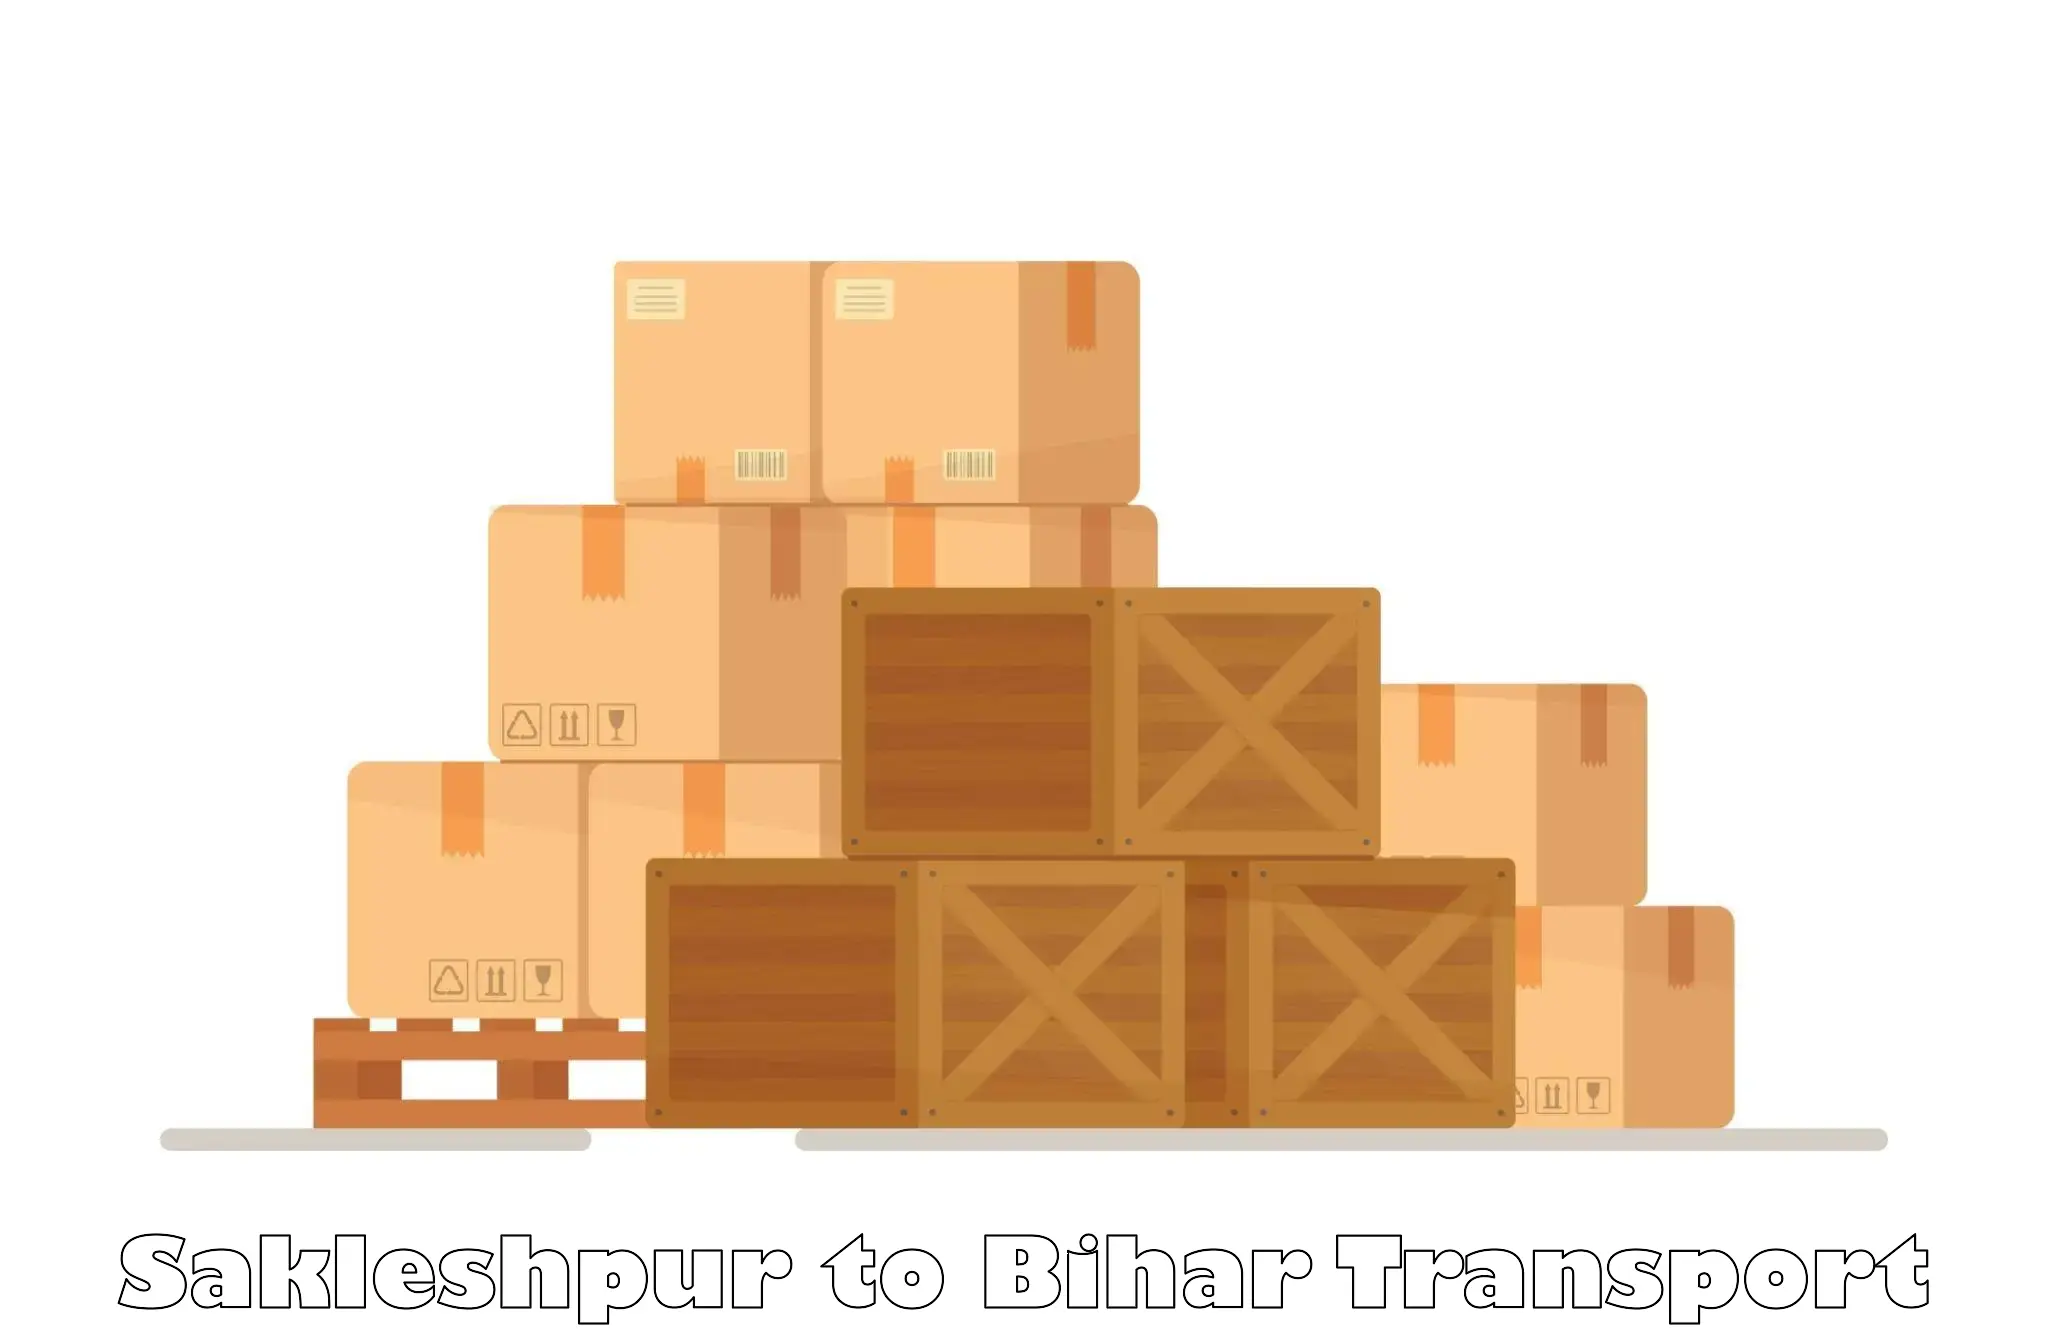 Transport services Sakleshpur to Kishunganj